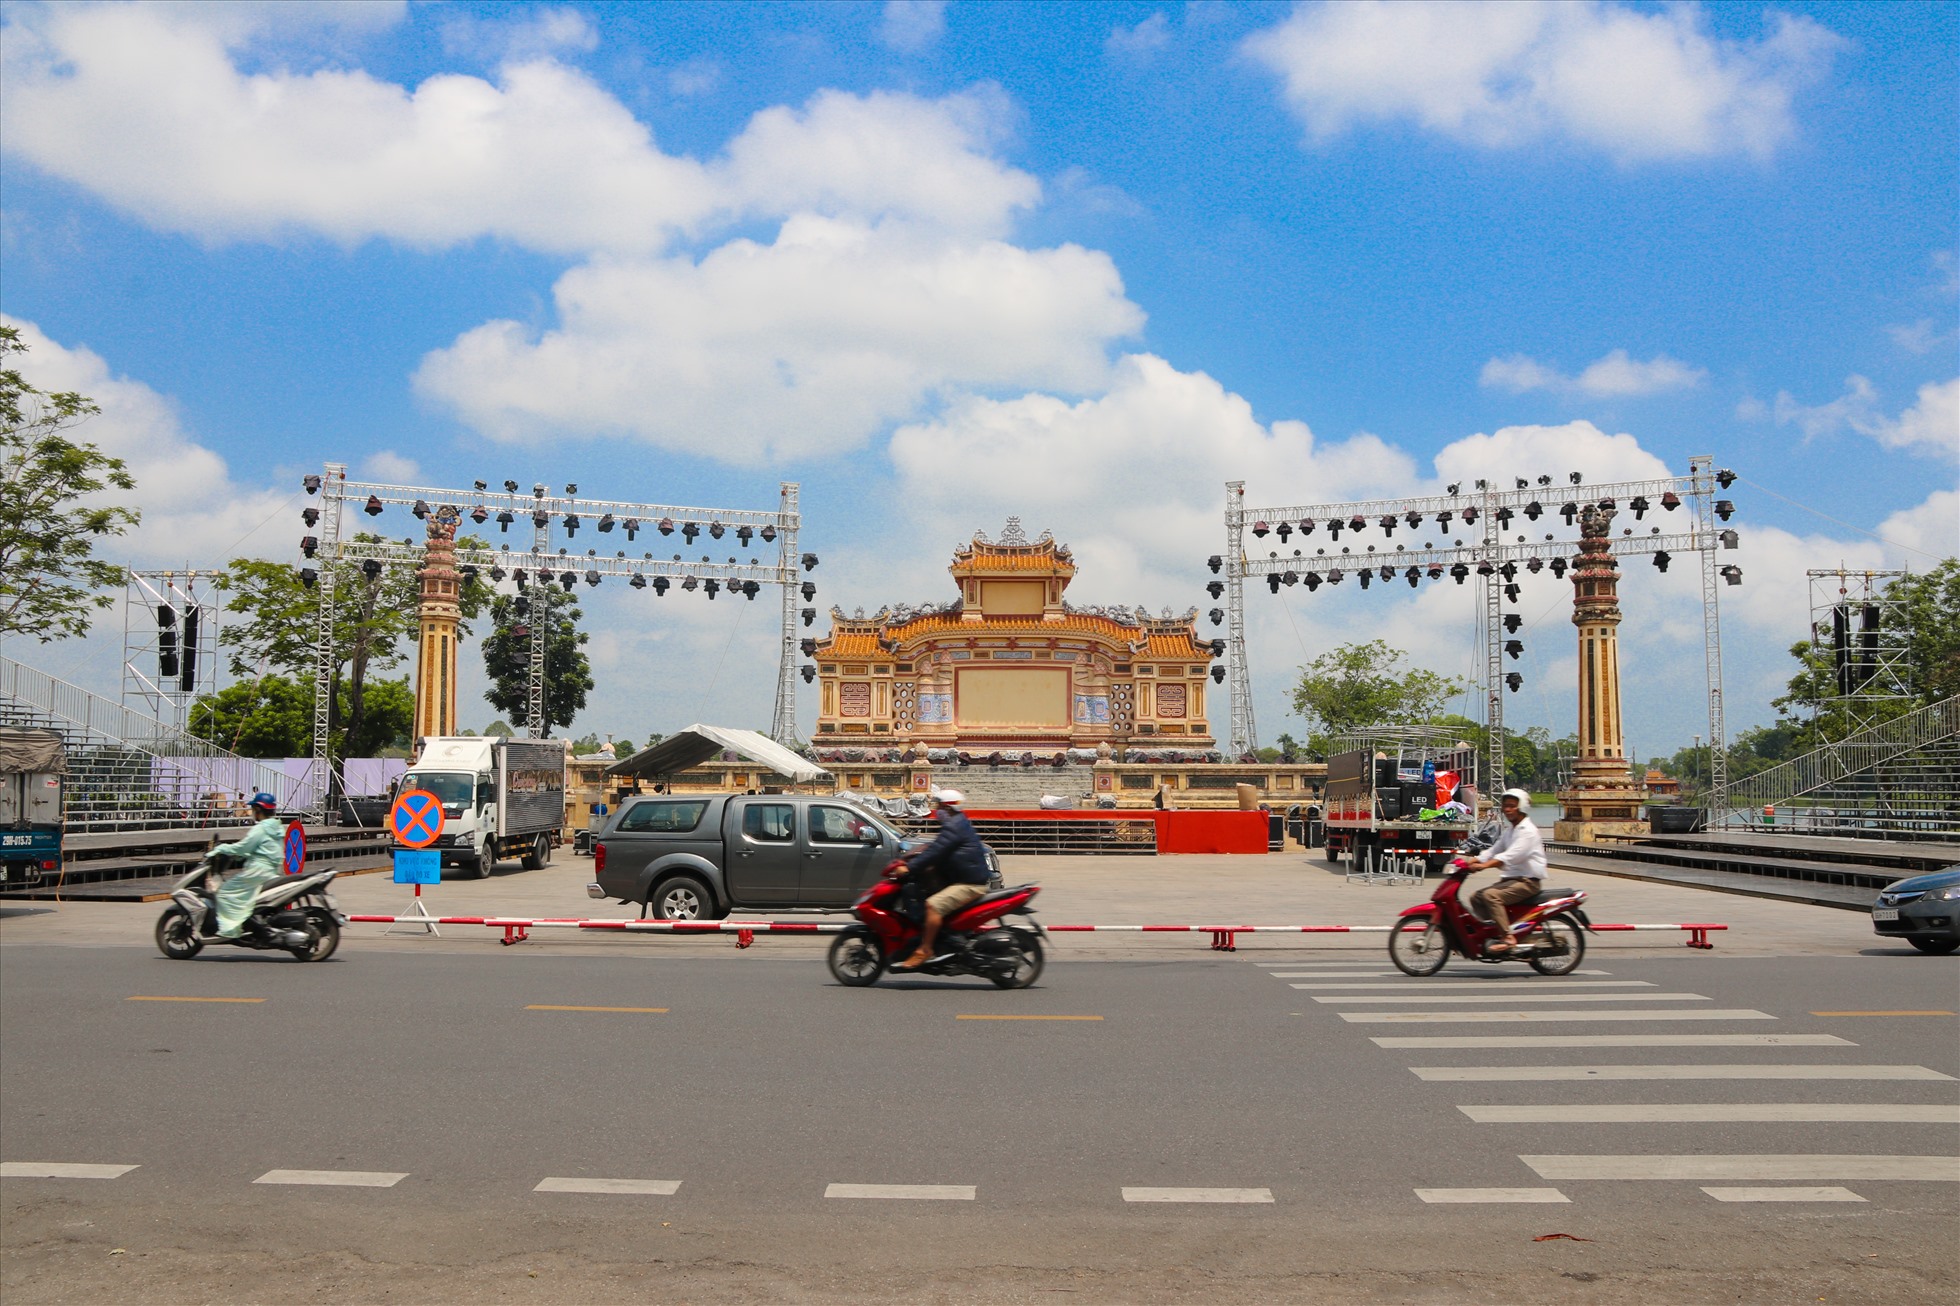 Festival Nghề truyền thống (NTT) là một trong những sự kiện lớn nhất trong năm của tỉnh Thừa Thiên Huế. Nhằm gìn giữ và phát huy giá trị nghề truyền thống, tăng cường quảng bá tới du khách trong và ngoài nước, kích cầu du lịch địa phương; đồng thời, nâng tầm hình ảnh và vị thế của Huế.